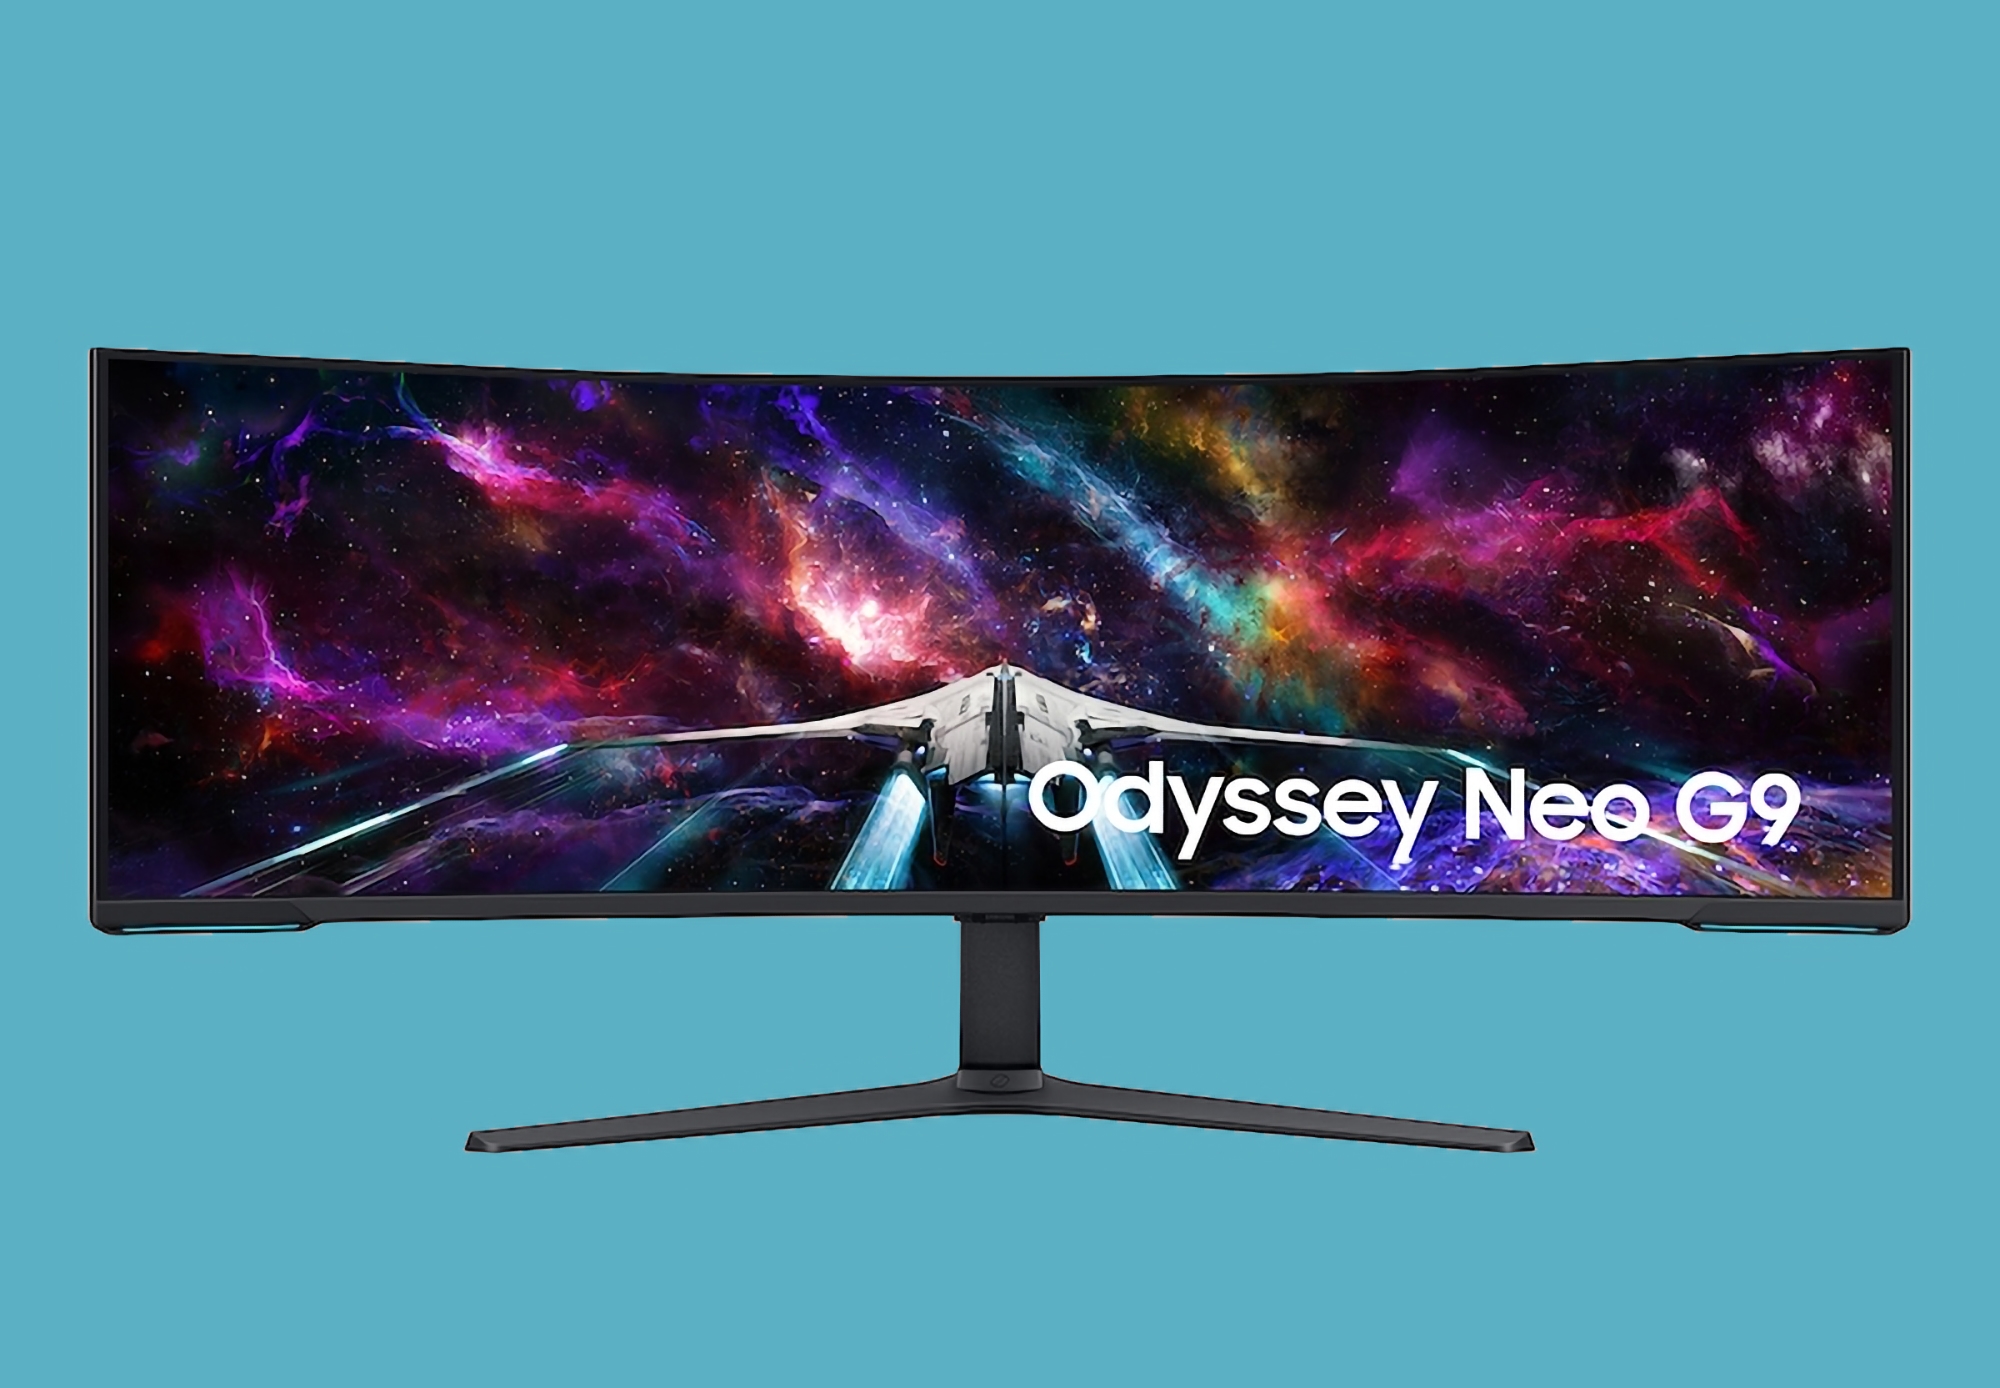 Gigantyczny monitor Samsung Odyssey Neo G9 z 57-calowym wyświetlaczem 240 Hz trafia właśnie do sprzedaży